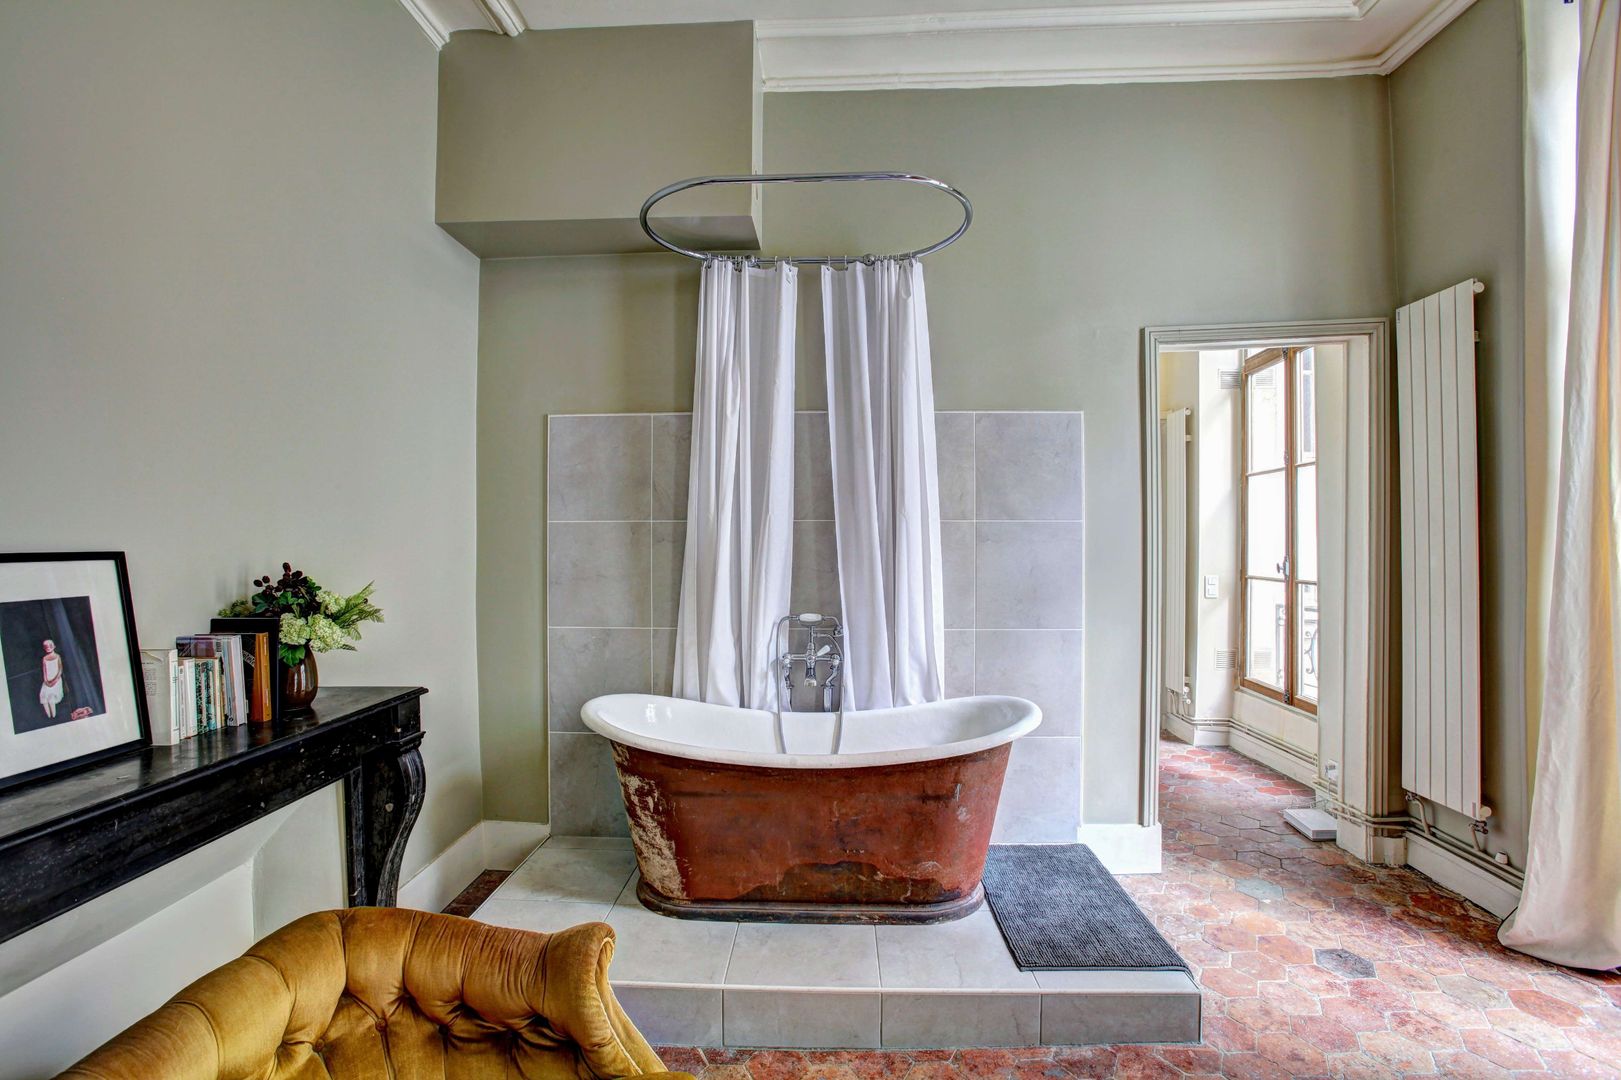 dourado na casa de banho: é assim que estiliza com bom gosto e descontração